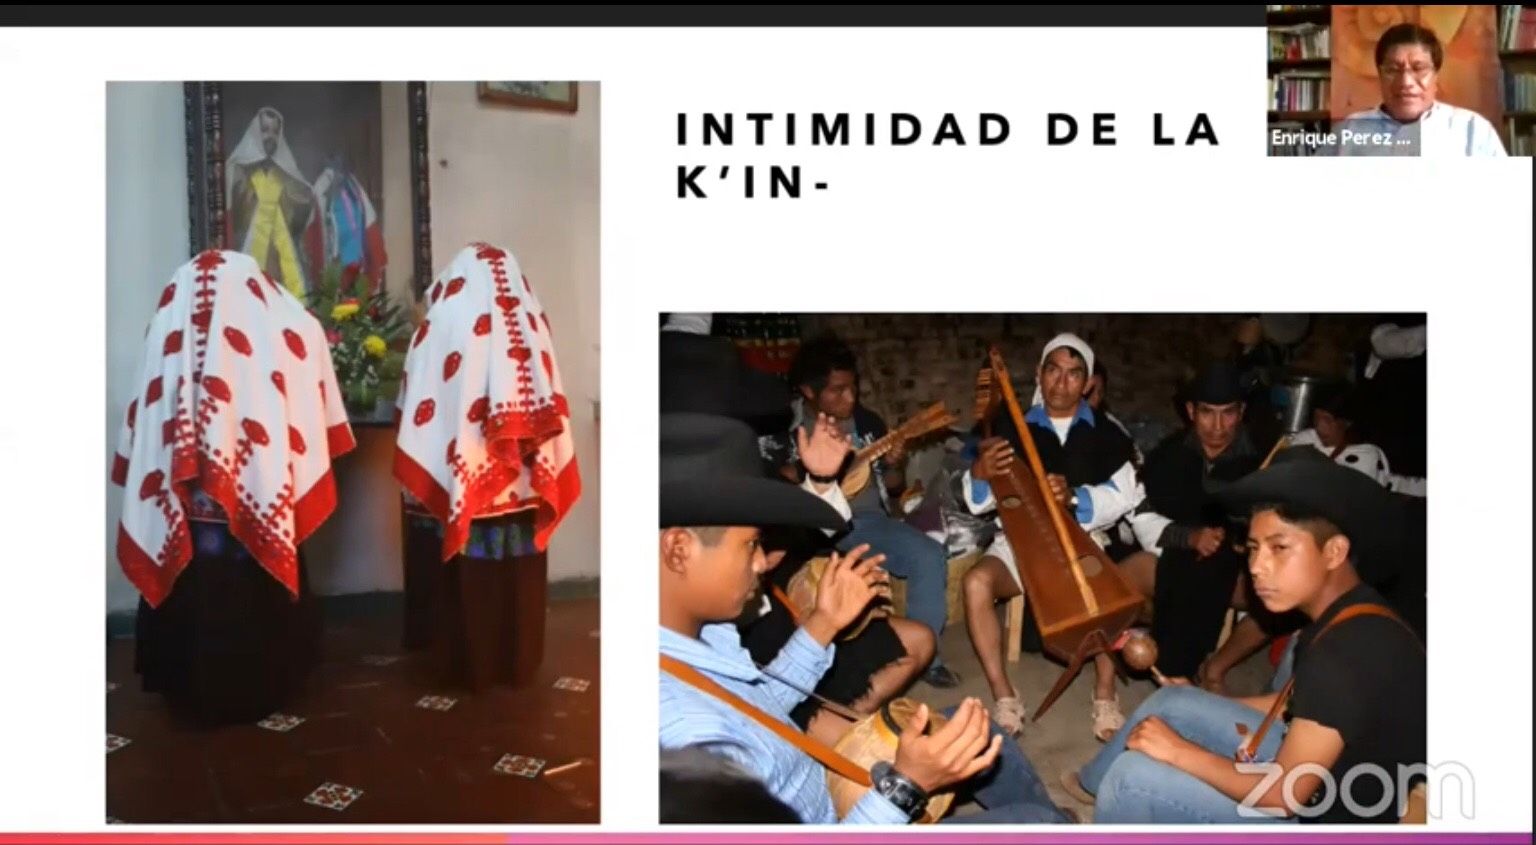 La intimidad en el lenguaje y ceremonias indígenas con Enrique Pérez López